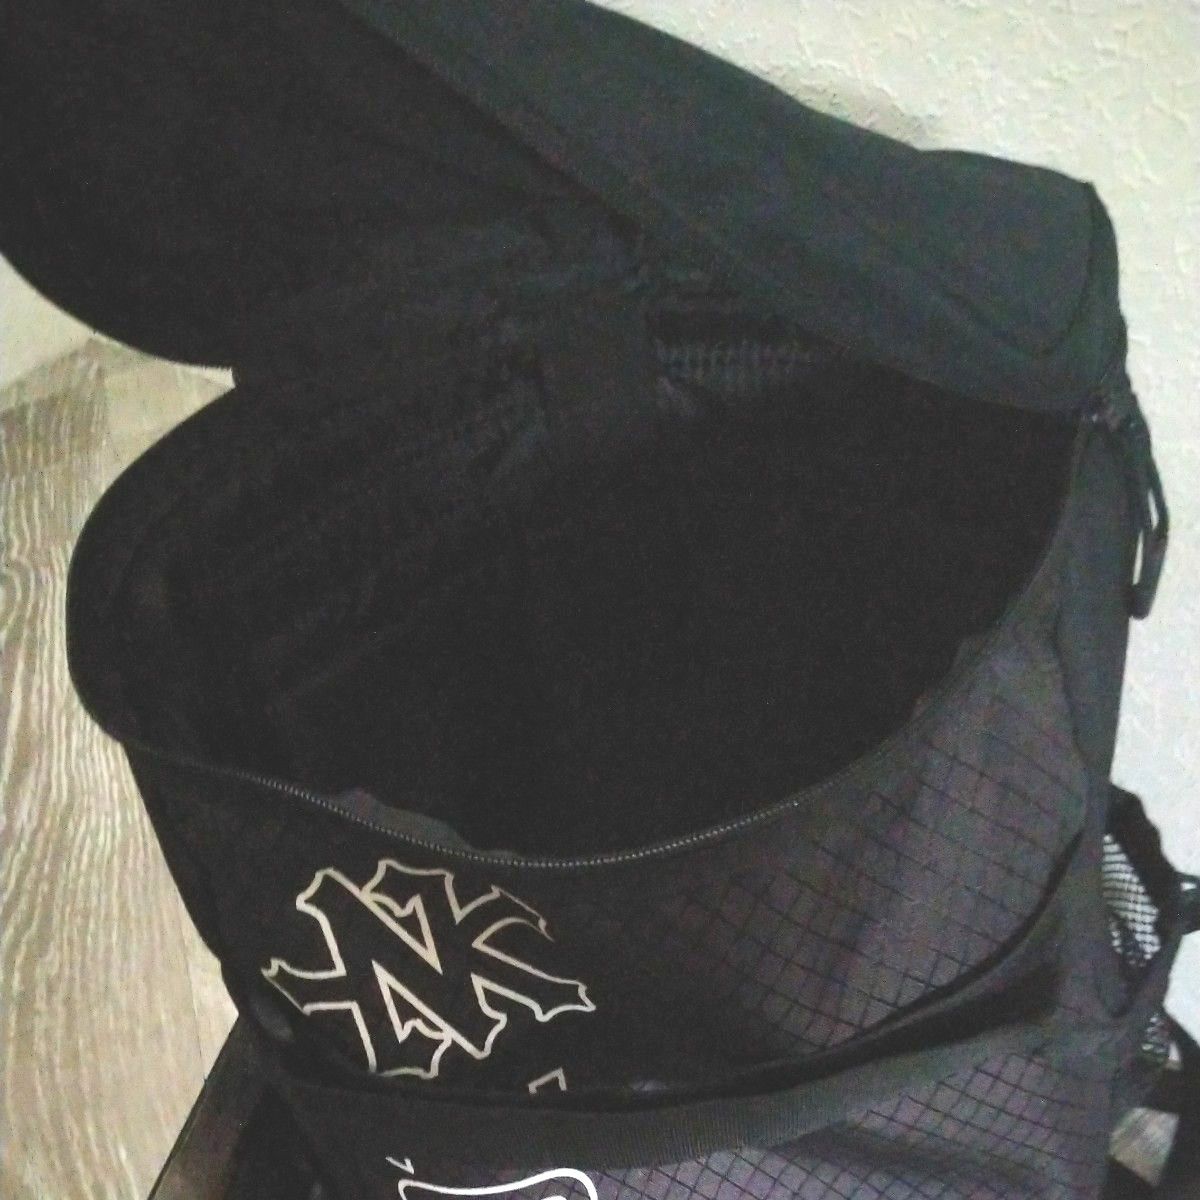 ニューヨークヤンキース バックパック リュック ブラック通勤 通学 学生 男女兼用バッグ ブラックバッグ 鞄 大容量